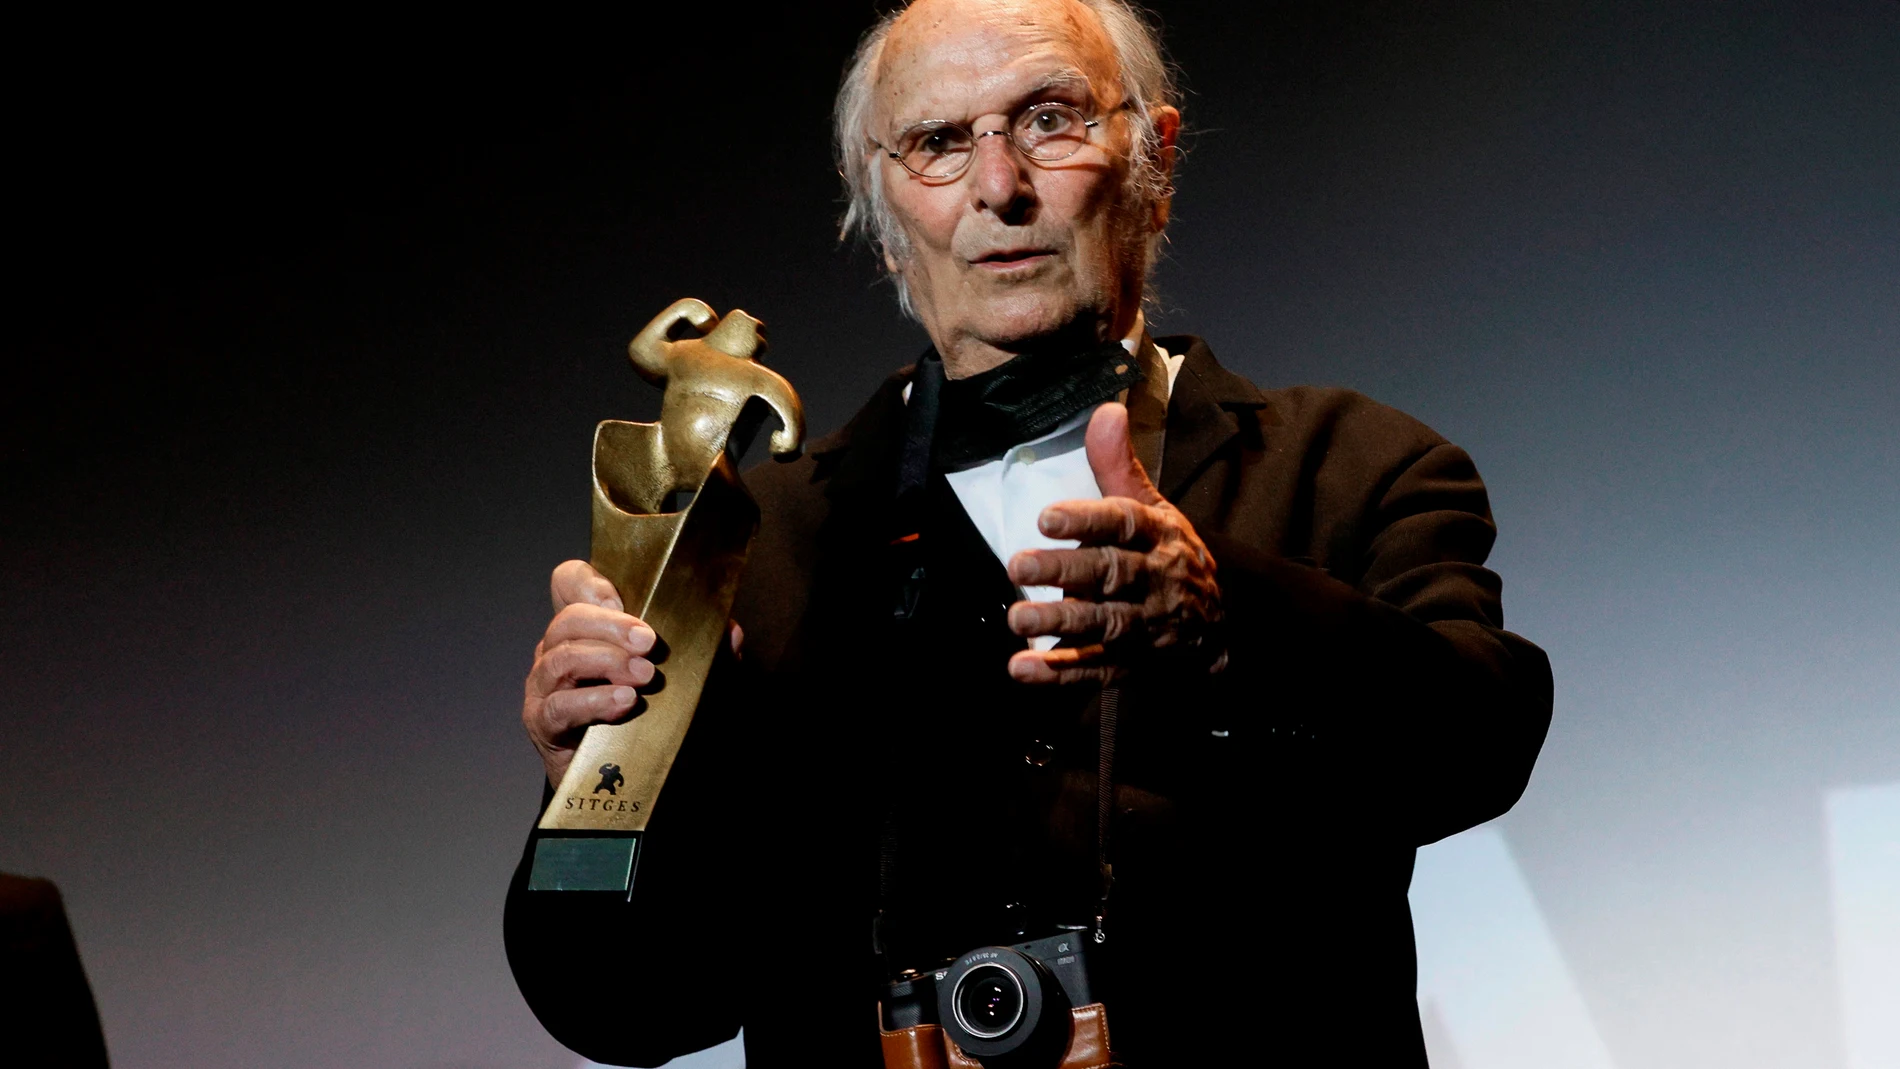 El director de cine, Carlos Saura, tras recibir el "Gran Premio Honorífico" del Festival de Cine Fantástico de Sitges